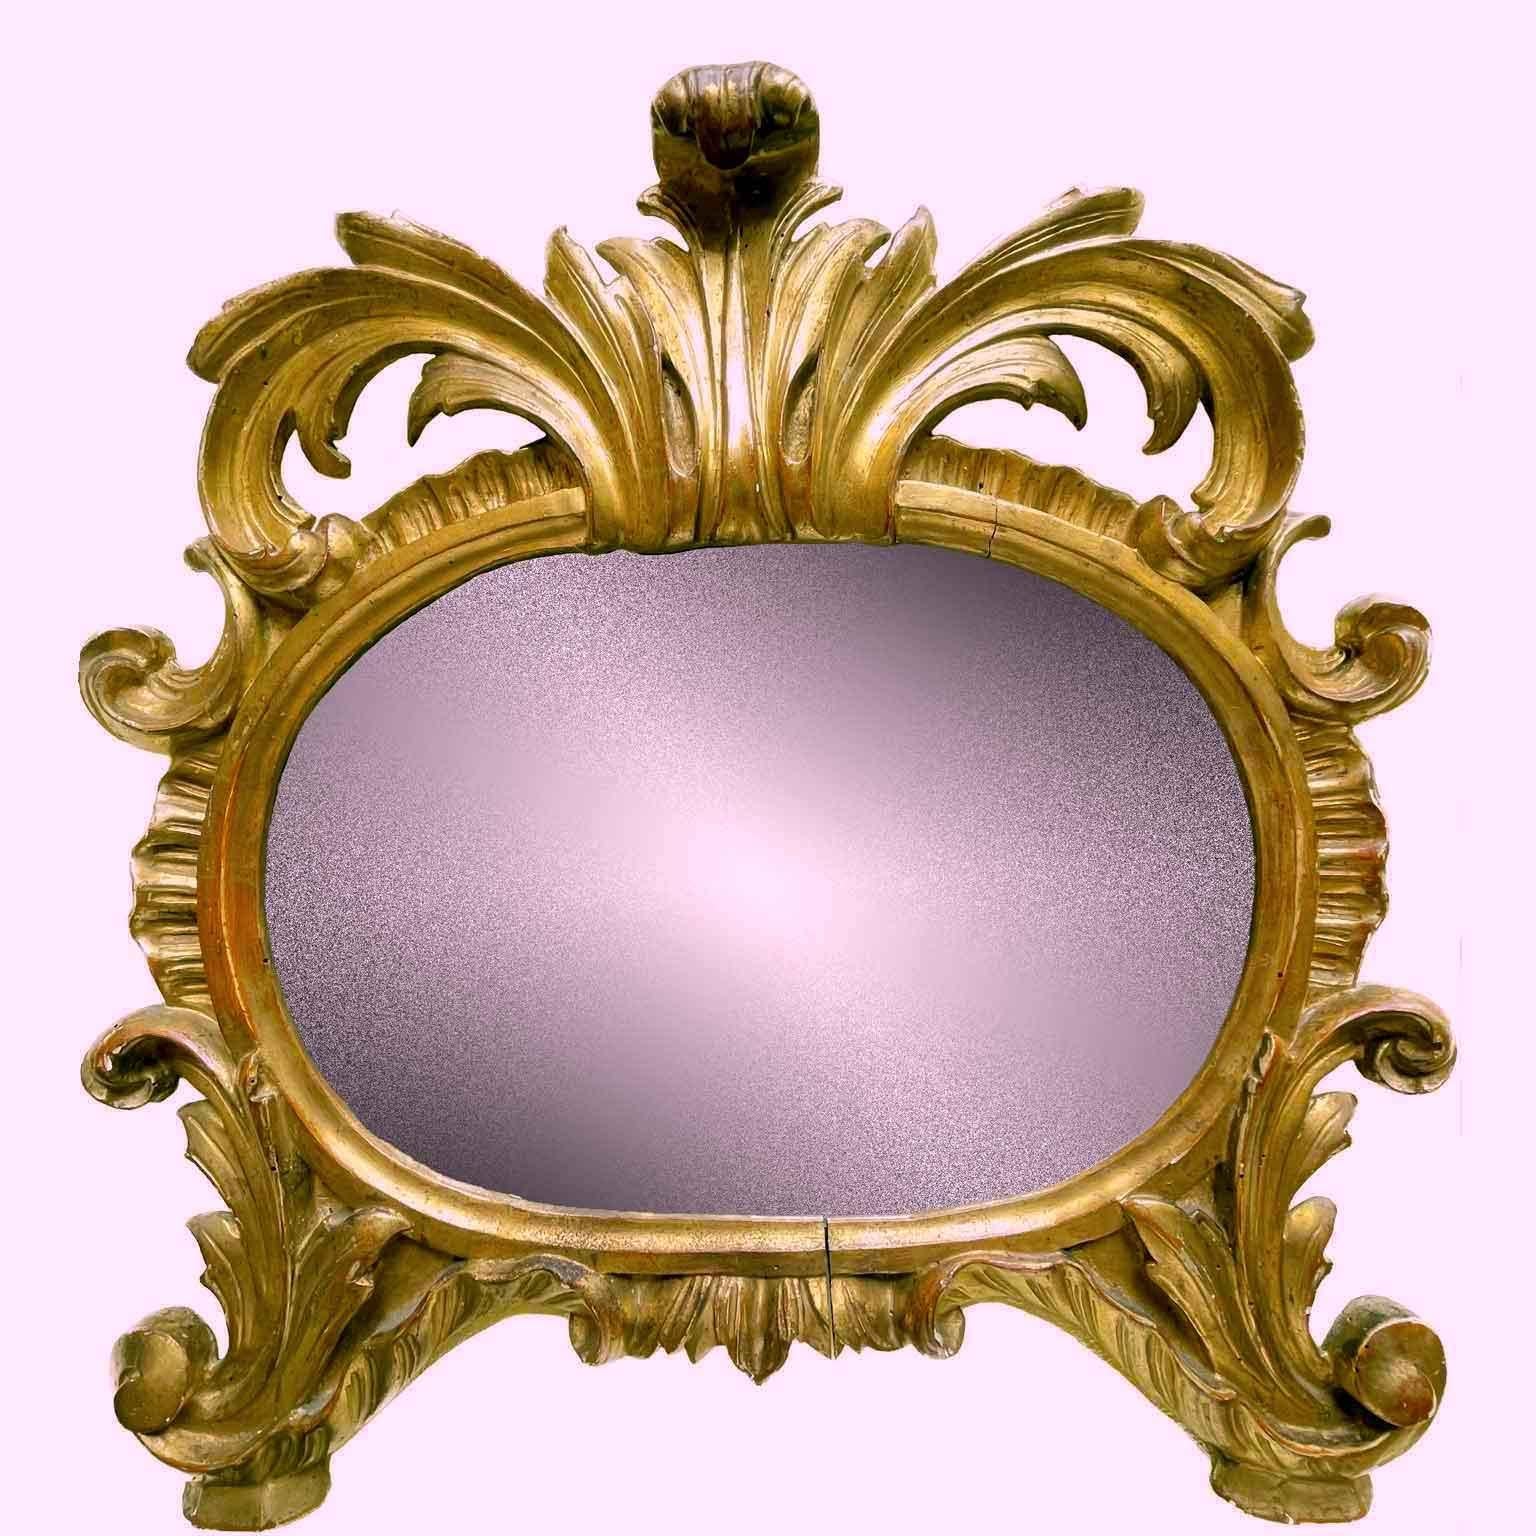 18th Century Specchio Dorato Italiano 1750 circa Cartagloria Ovale Luigi XV Intaglio Fogliato For Sale